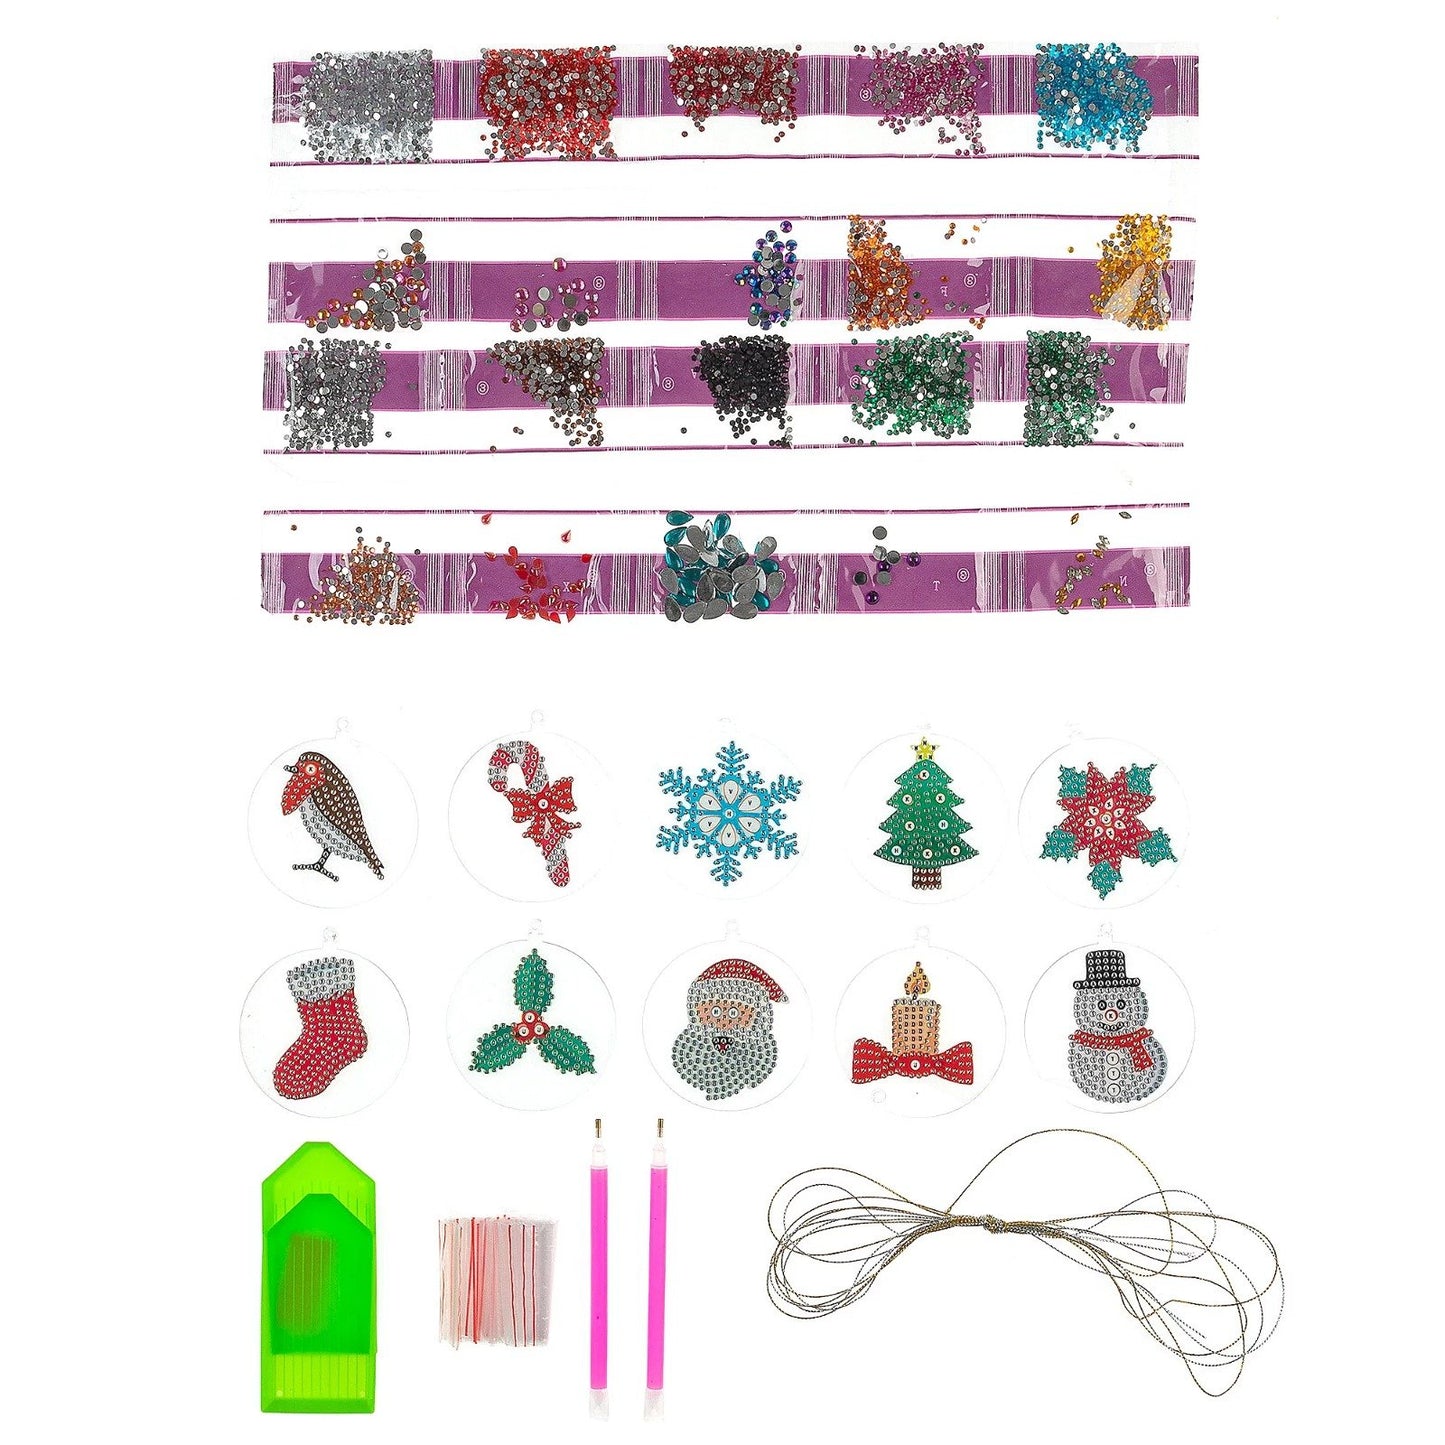 CAD-10XM: Crystal Art Festive Hanging Baubles set of 10